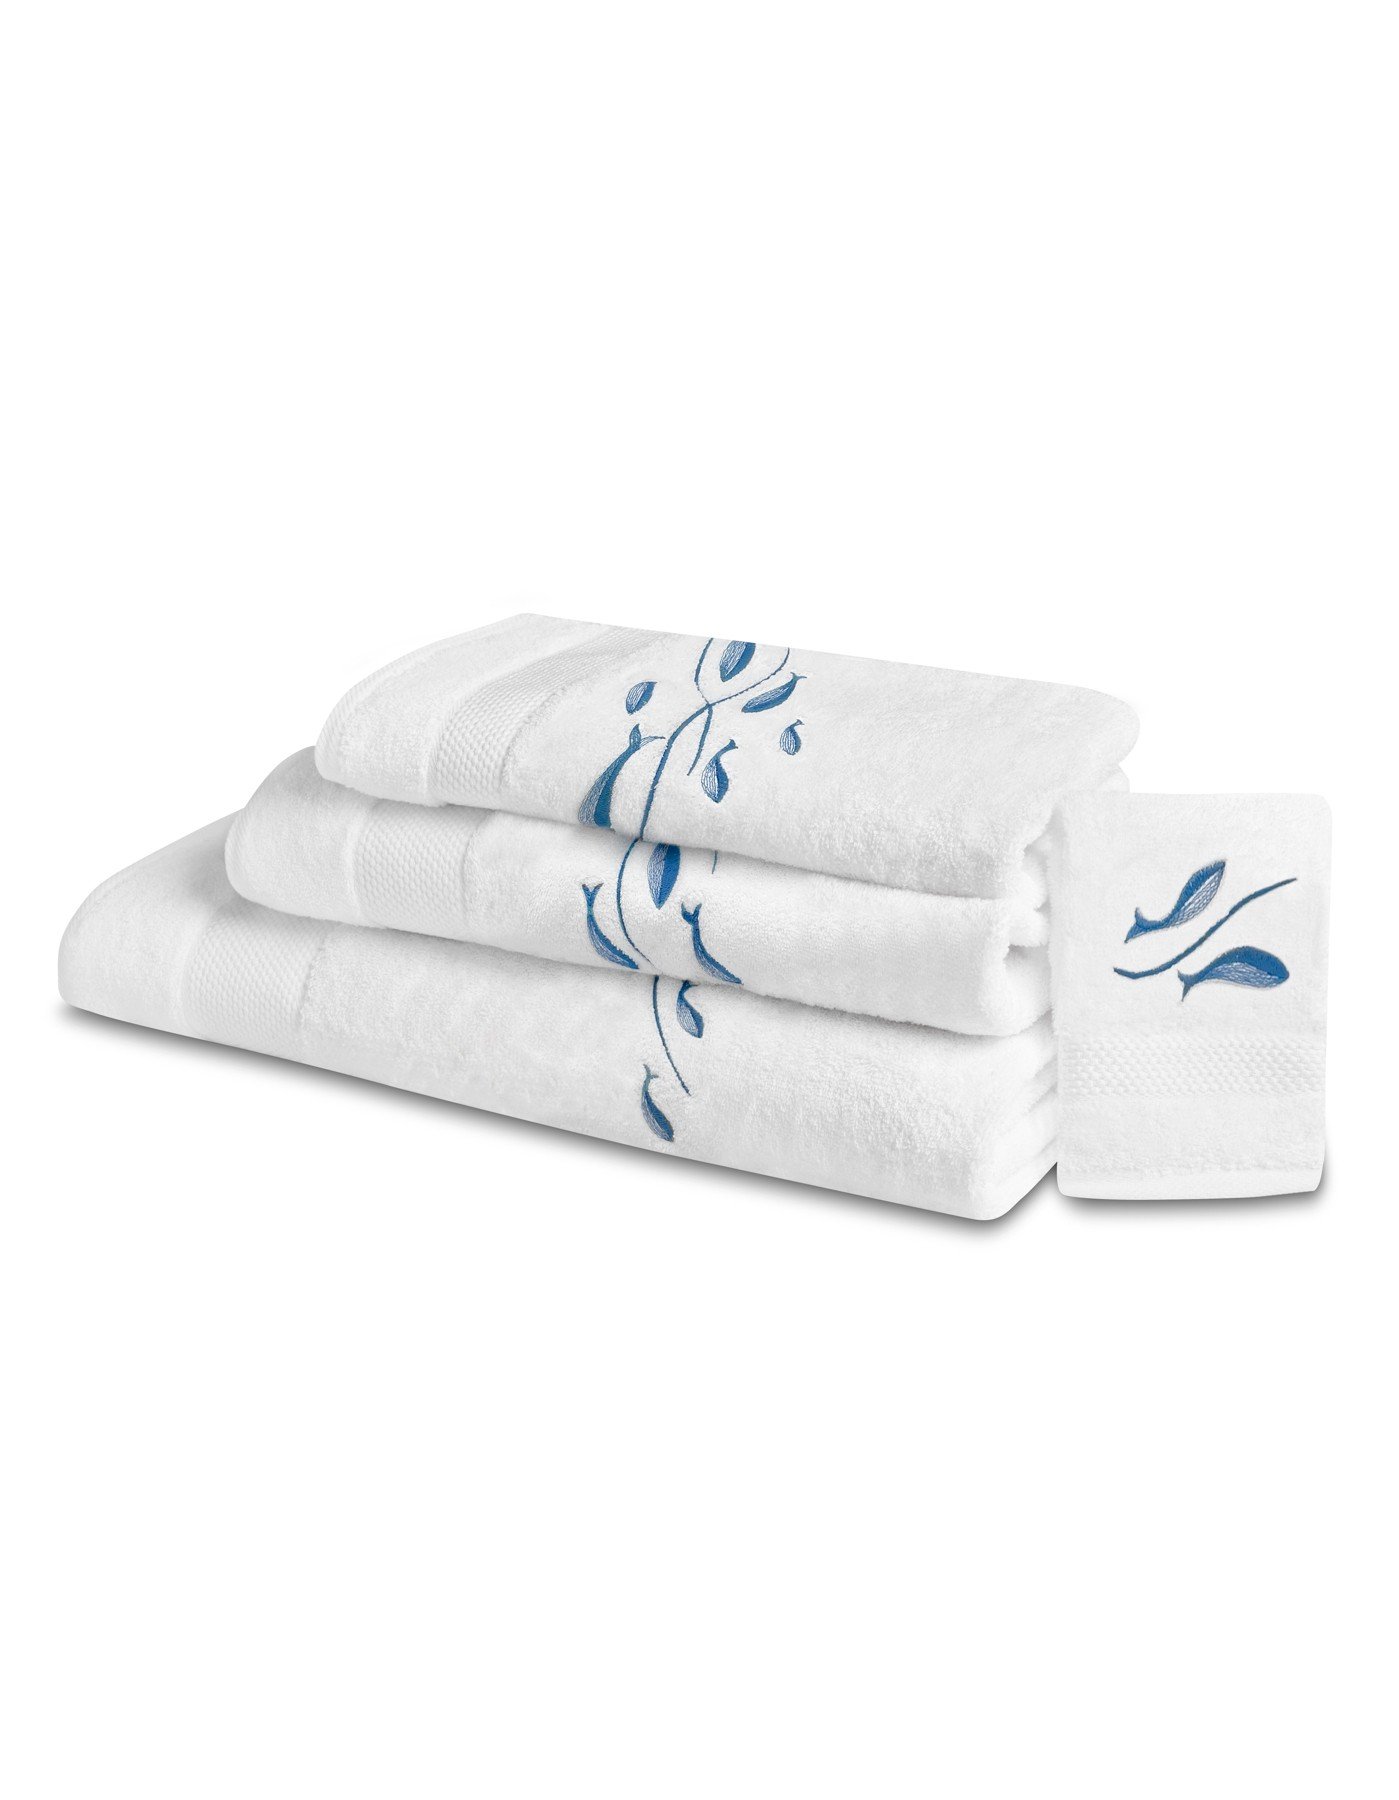 ODYSSEE  bath towels